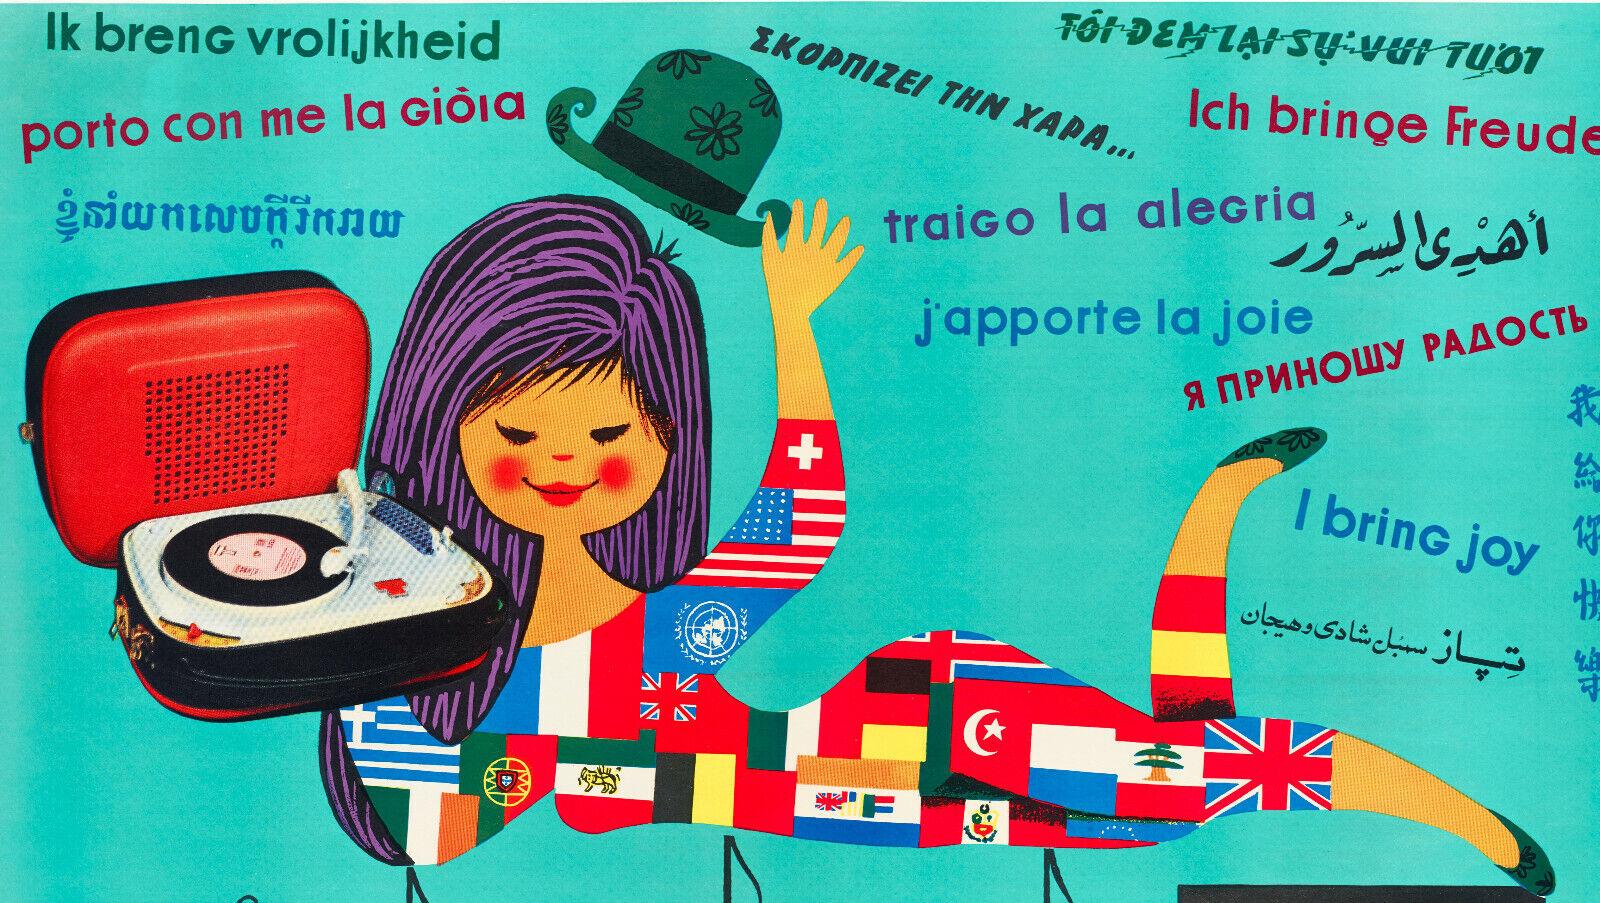 Original Vintage Poster-Gauthier-Teppaz-Record Player-Lyon-Musique, c.1960

Affiche pour promouvoir le tourne-disque portable Teppaz.
L'affiche représente une femme allongée vêtue de drapeaux, un tourne-disque, une partition de musique et la même